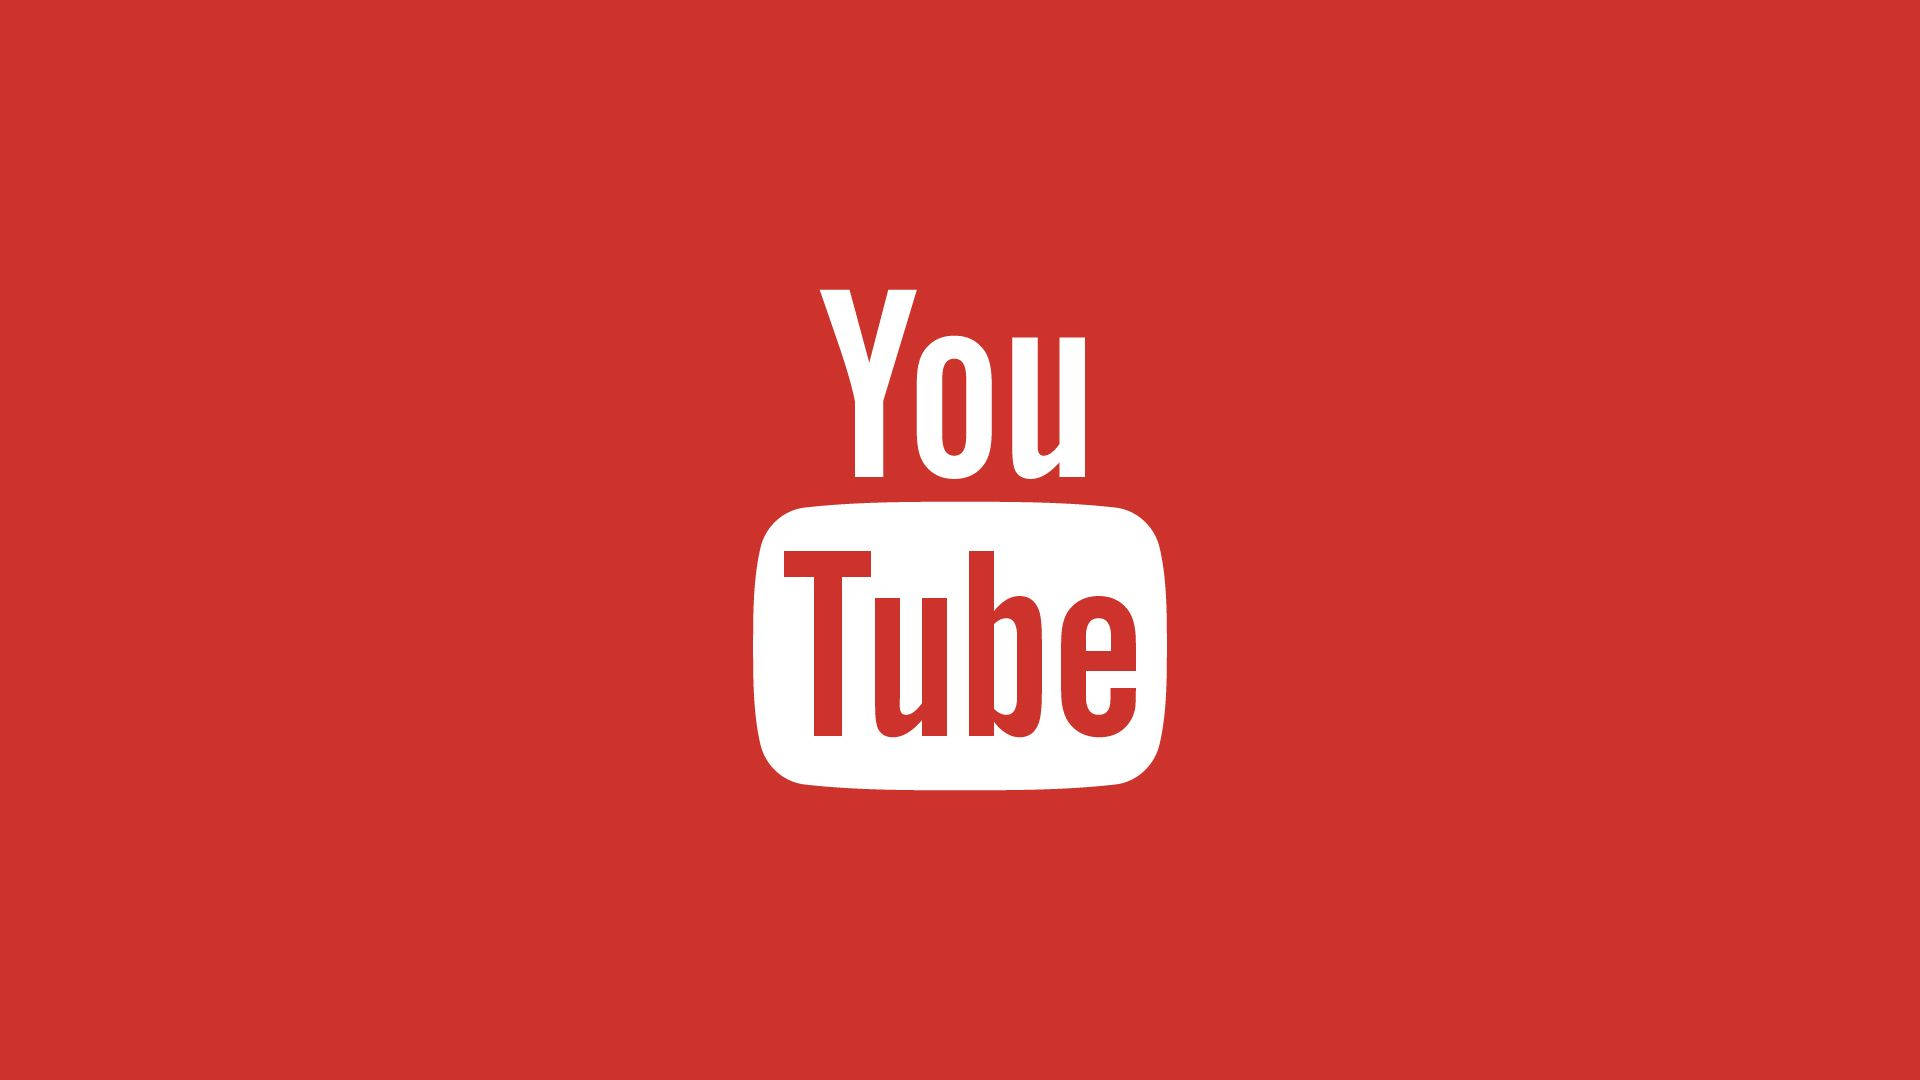 200+] Youtube Logo Background s 